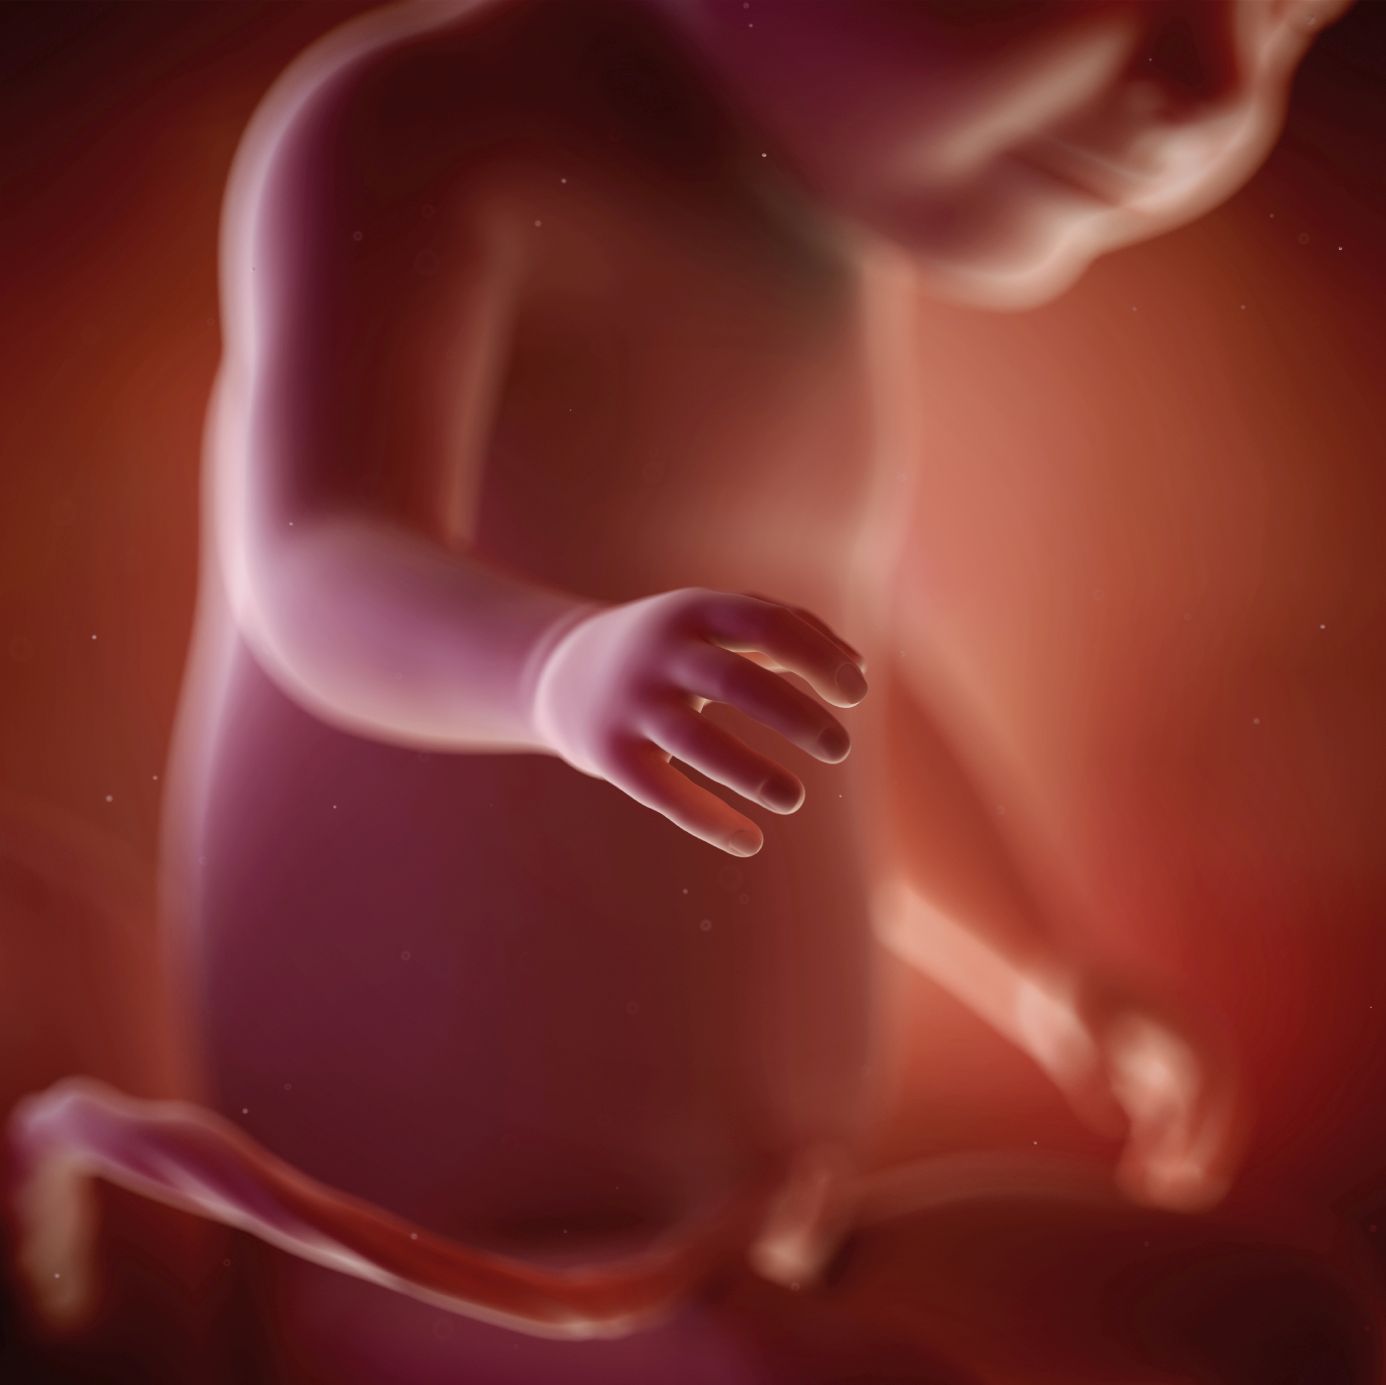 fetus 32 weeks